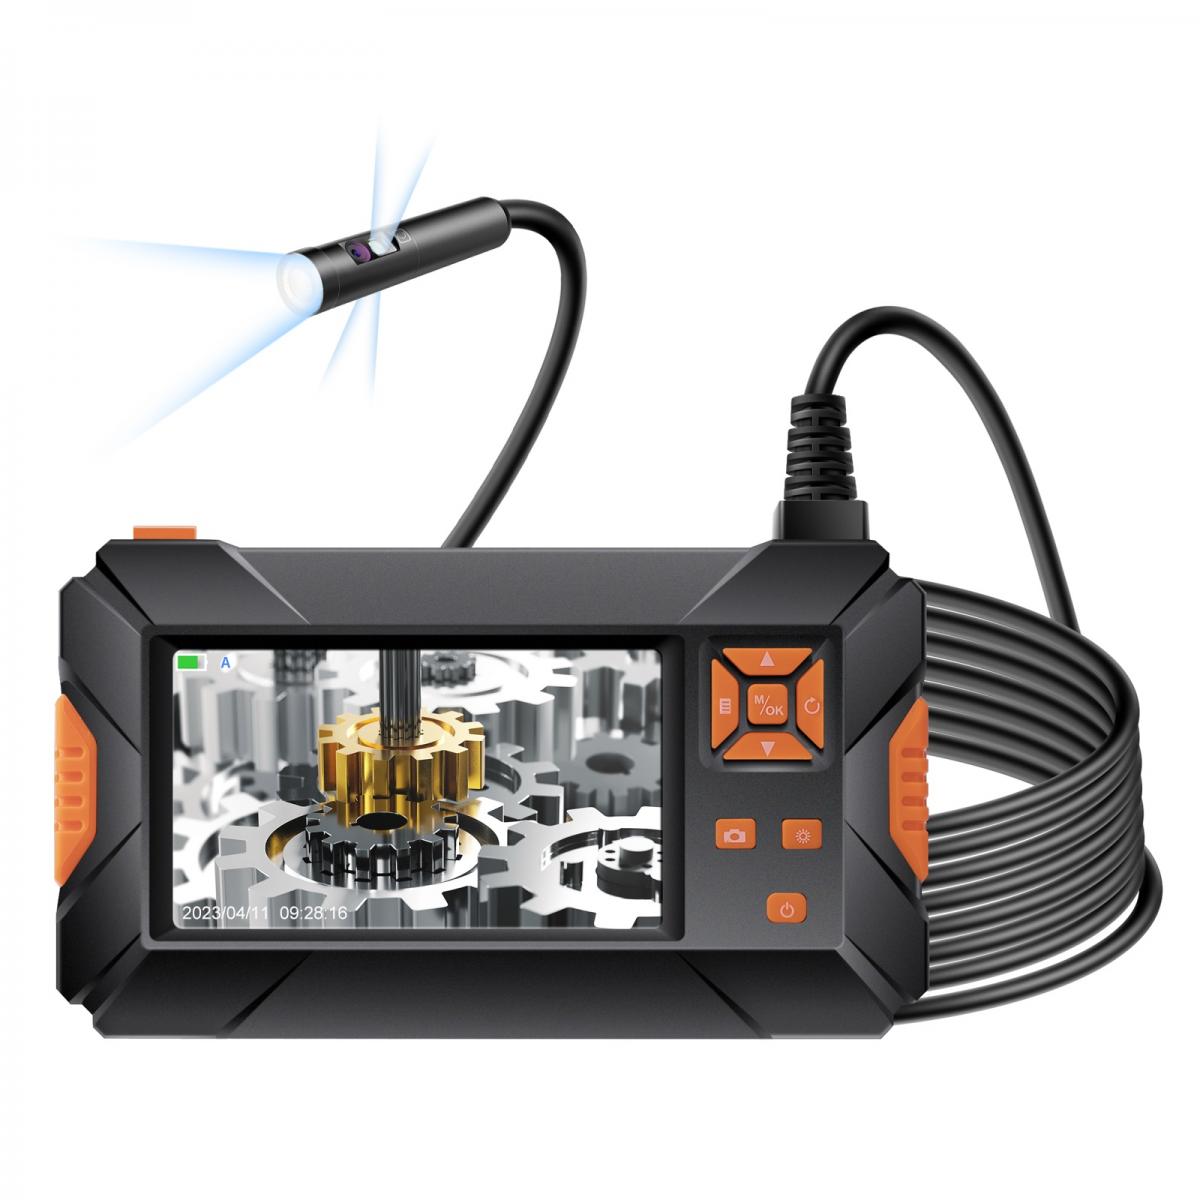 Caméra inspection canalisation - 30 m - 12 LED - Moniteur TFT de 9 po en  couleur